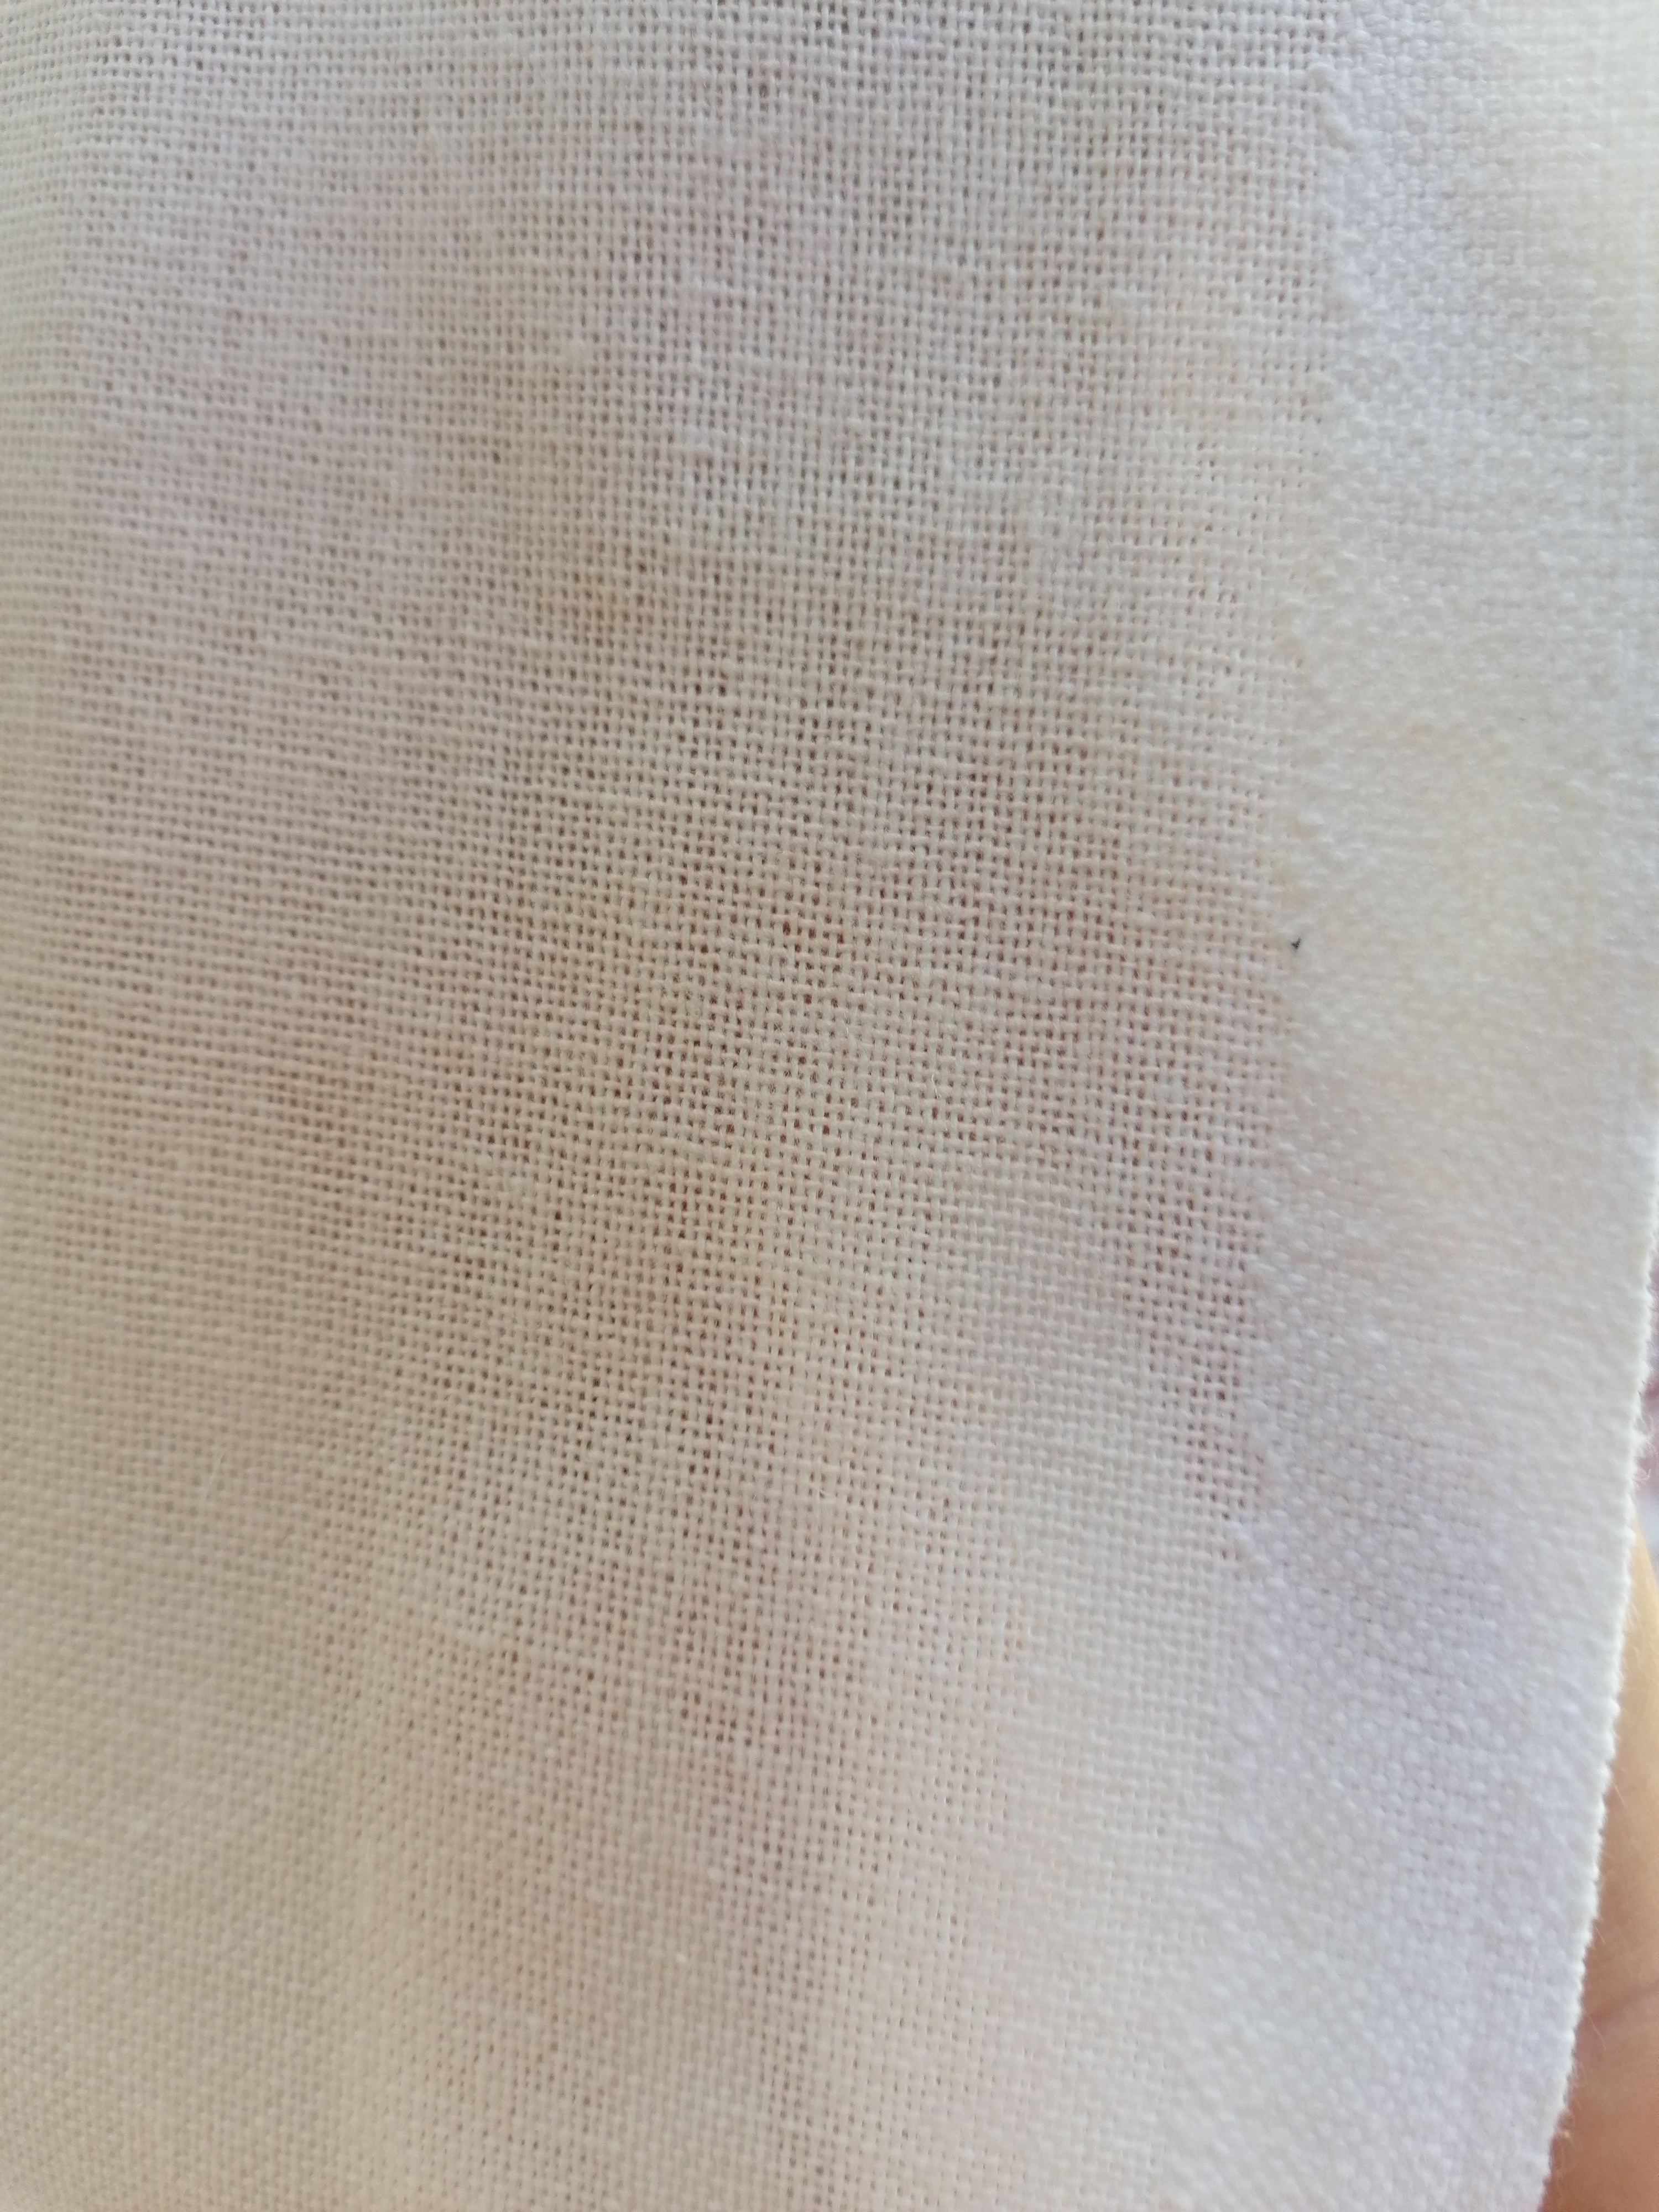 OZANA, pânză medie de bumbac, albită sau natur